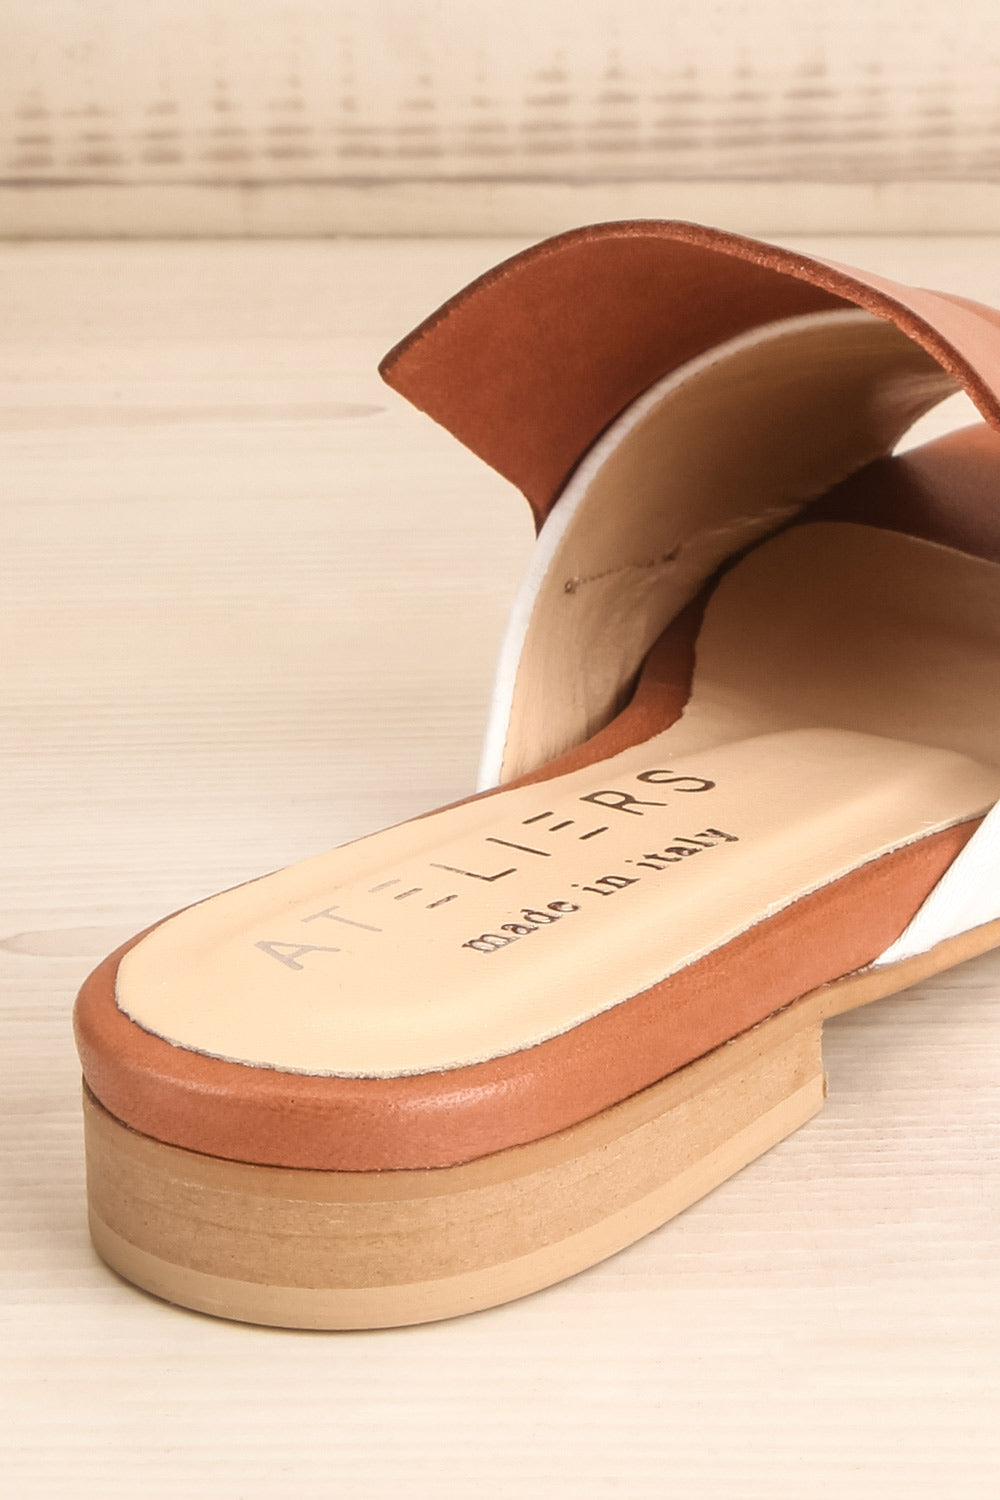 Cardinet White & Tan Slip-On Sandals | La Petite Garçonne Chpt. 2 10